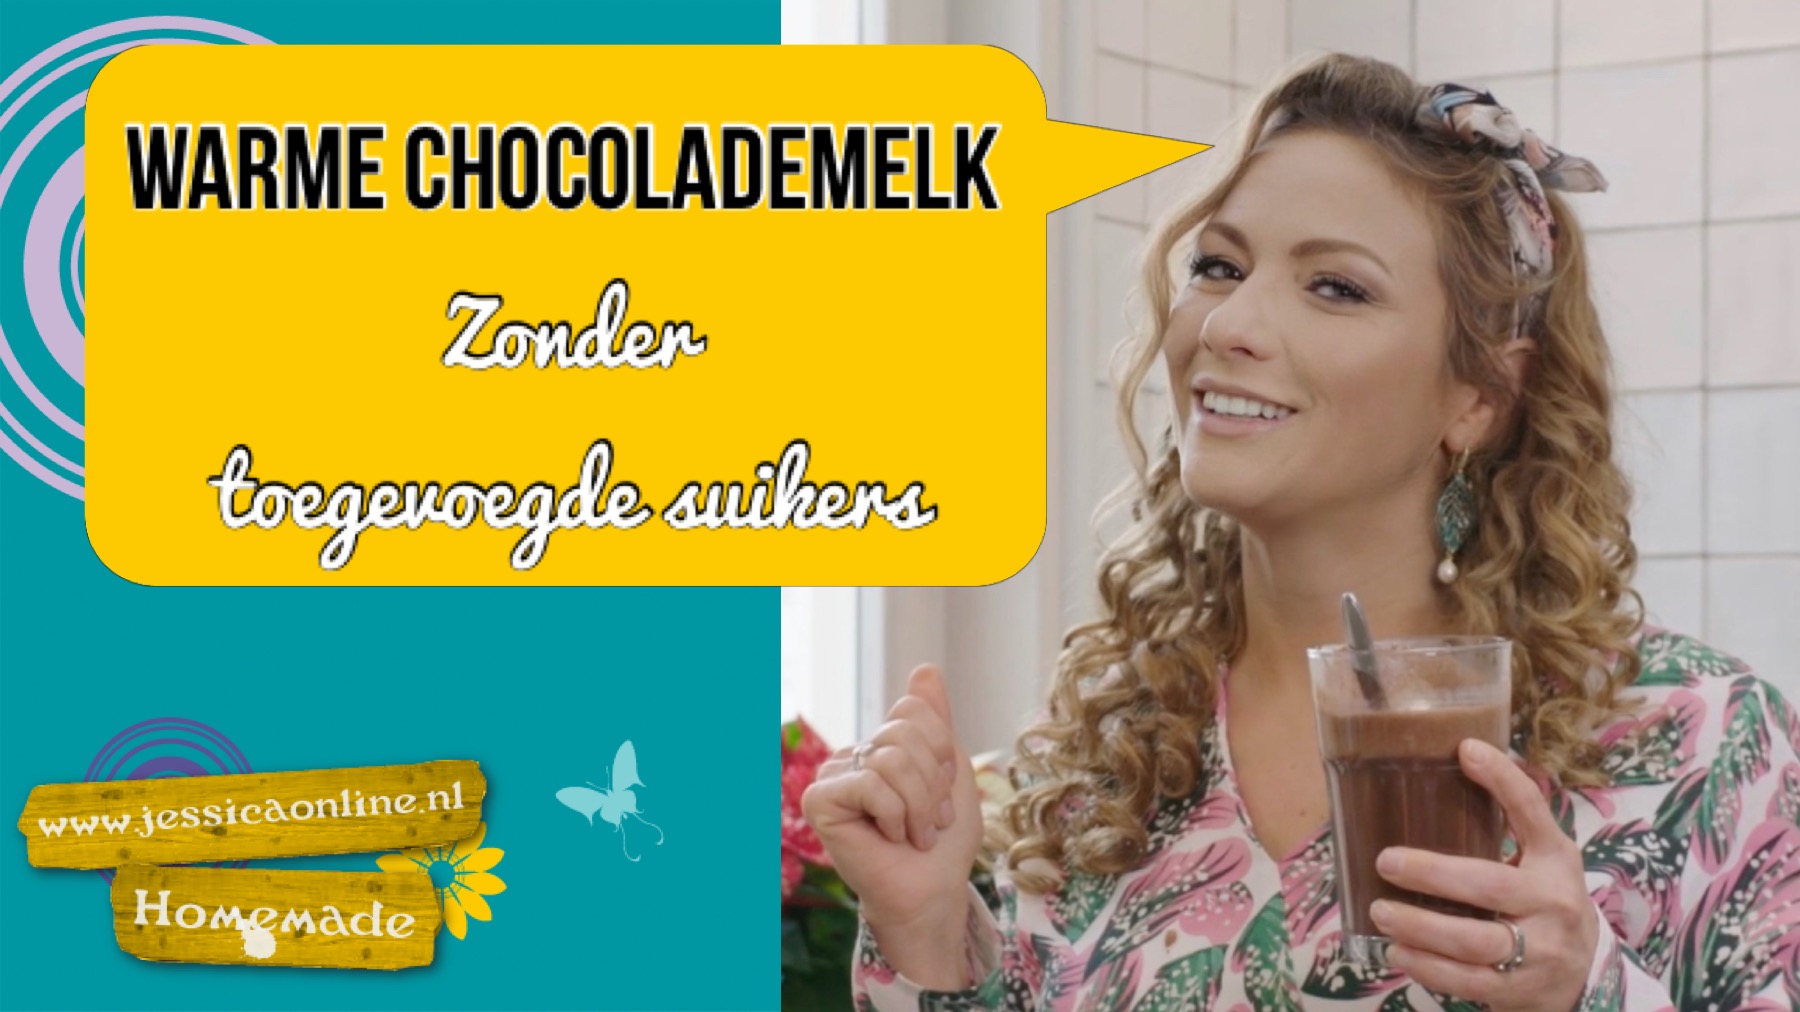 Warme chocolademelk zonder toegevoegde suikers JessicaOnline.nl